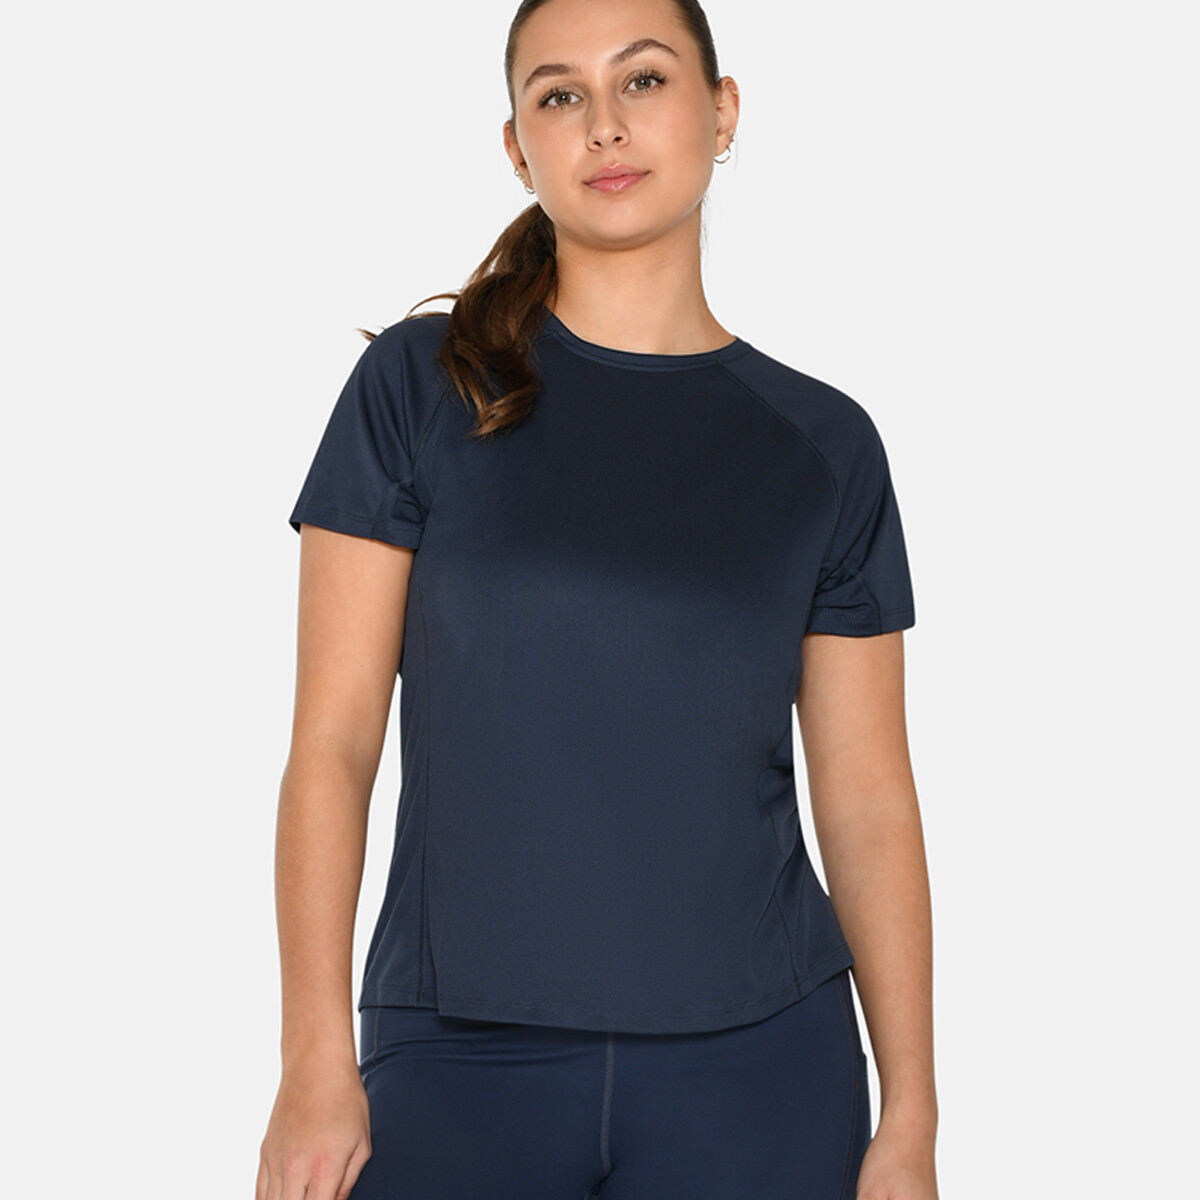 Se Zebdia Women Sports T-shirt, Farve: Blå, Størrelse: S, Dame hos Netlingeri.dk